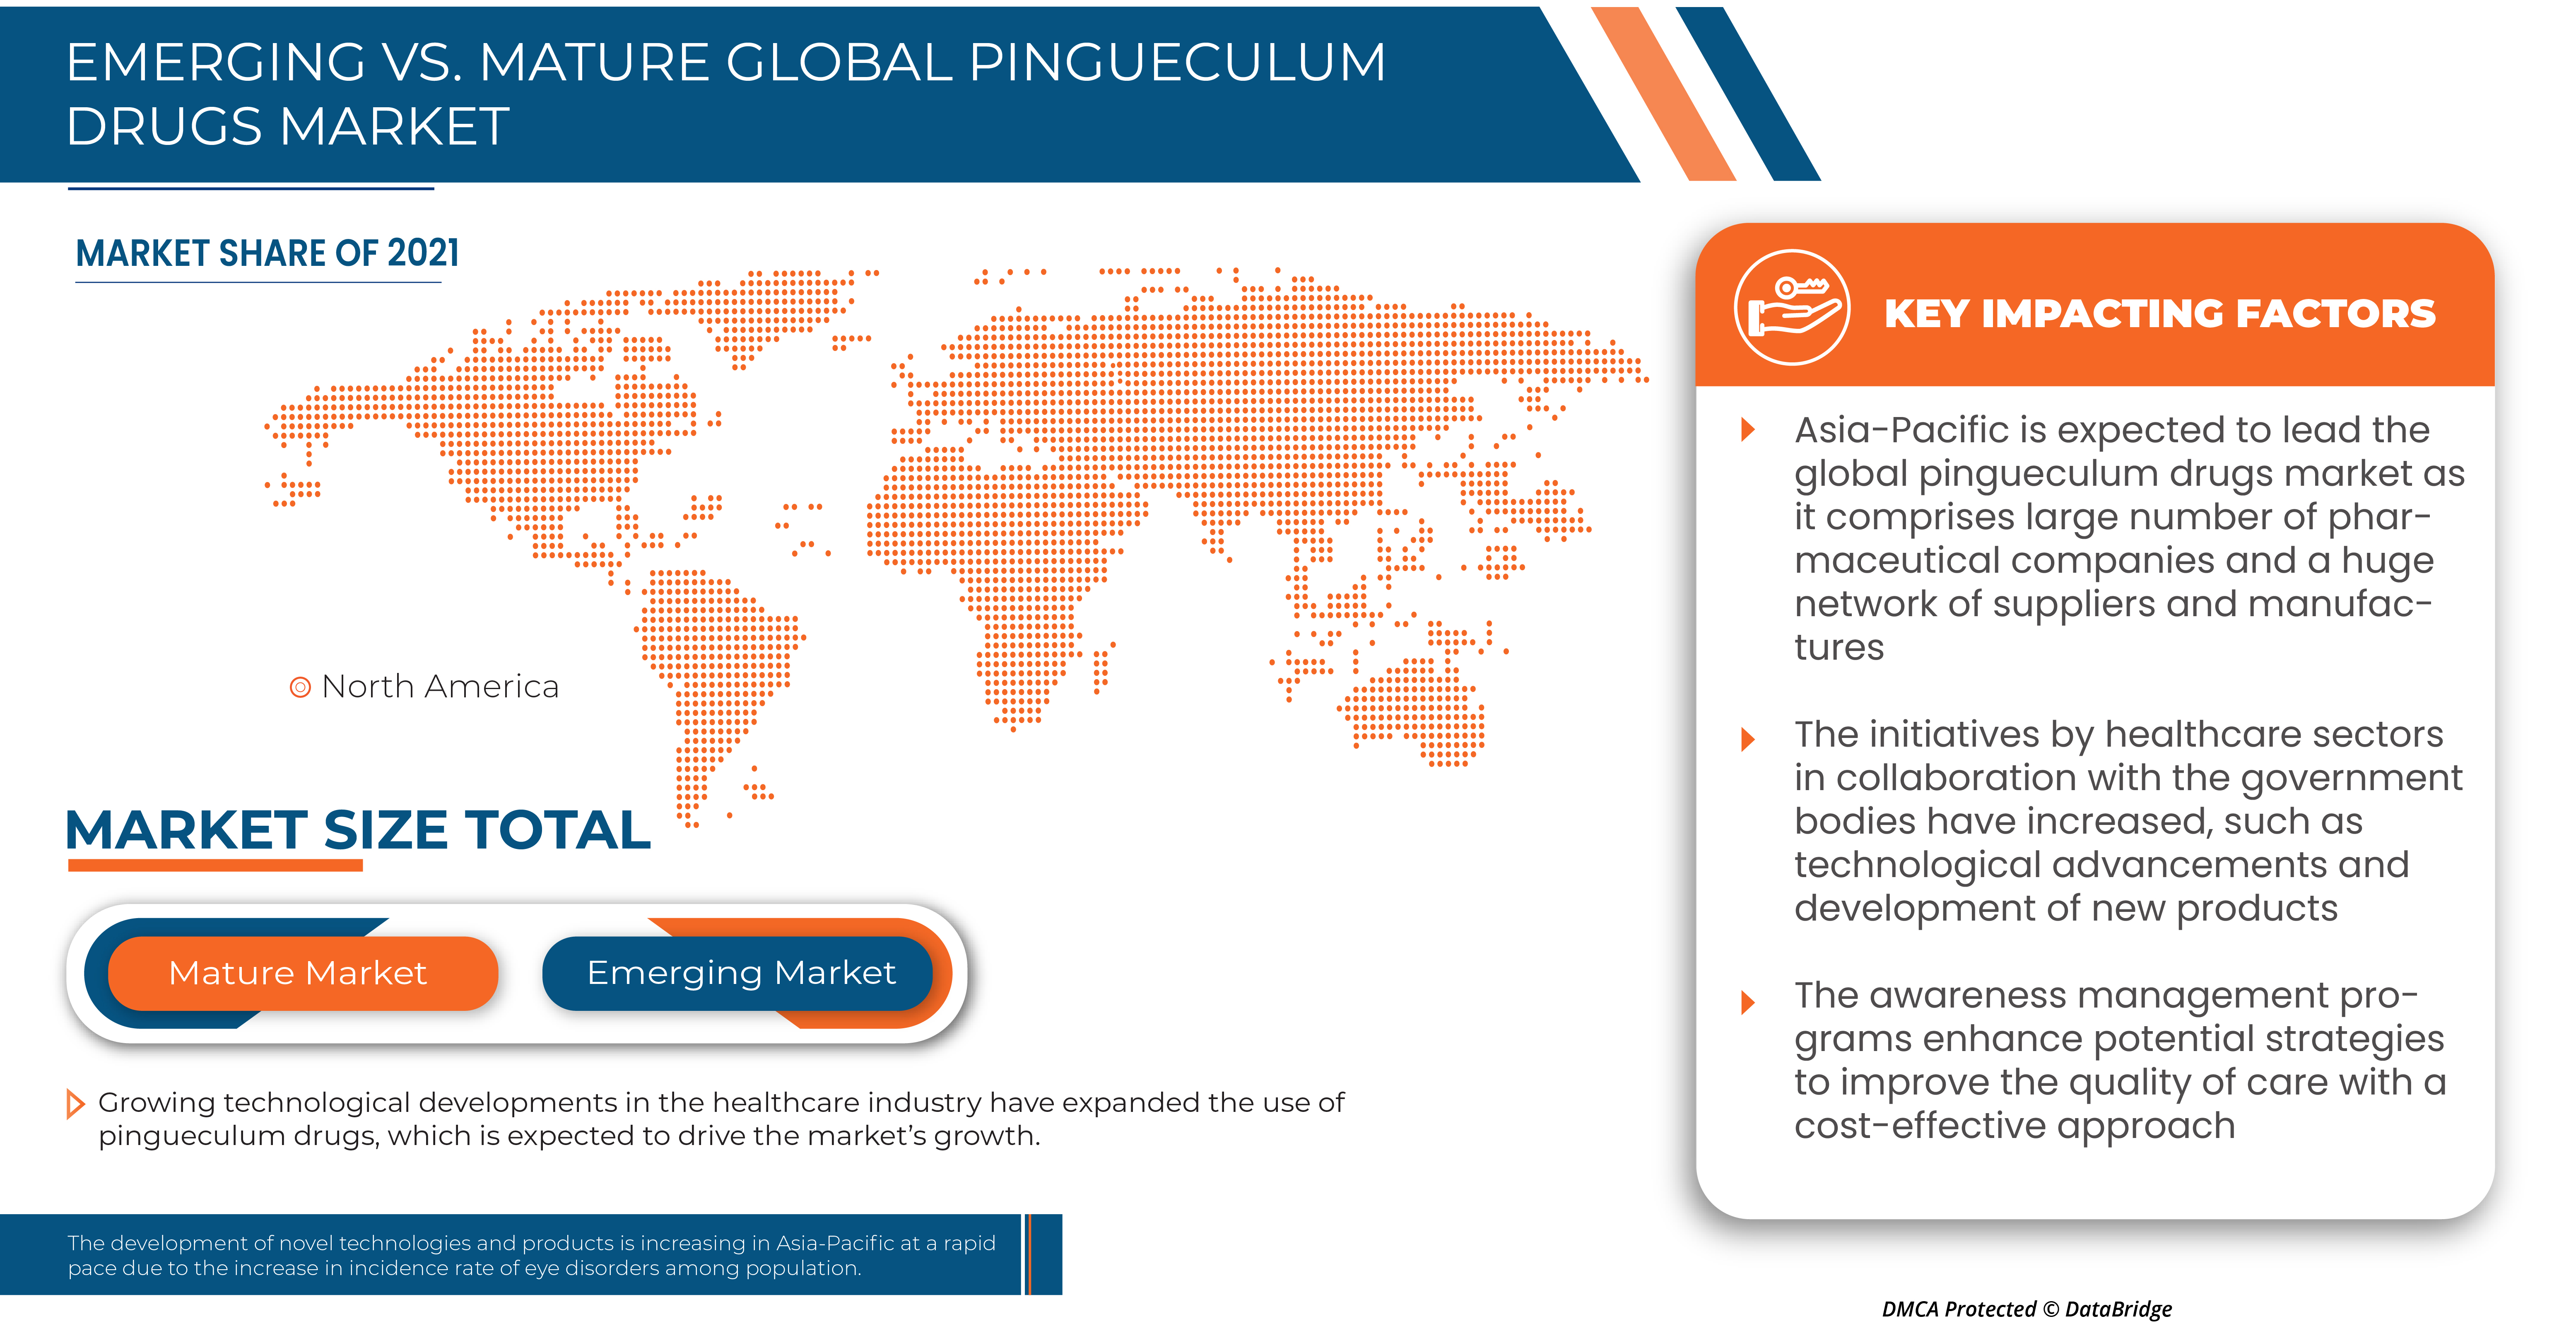 Pingueculum Drugs Market